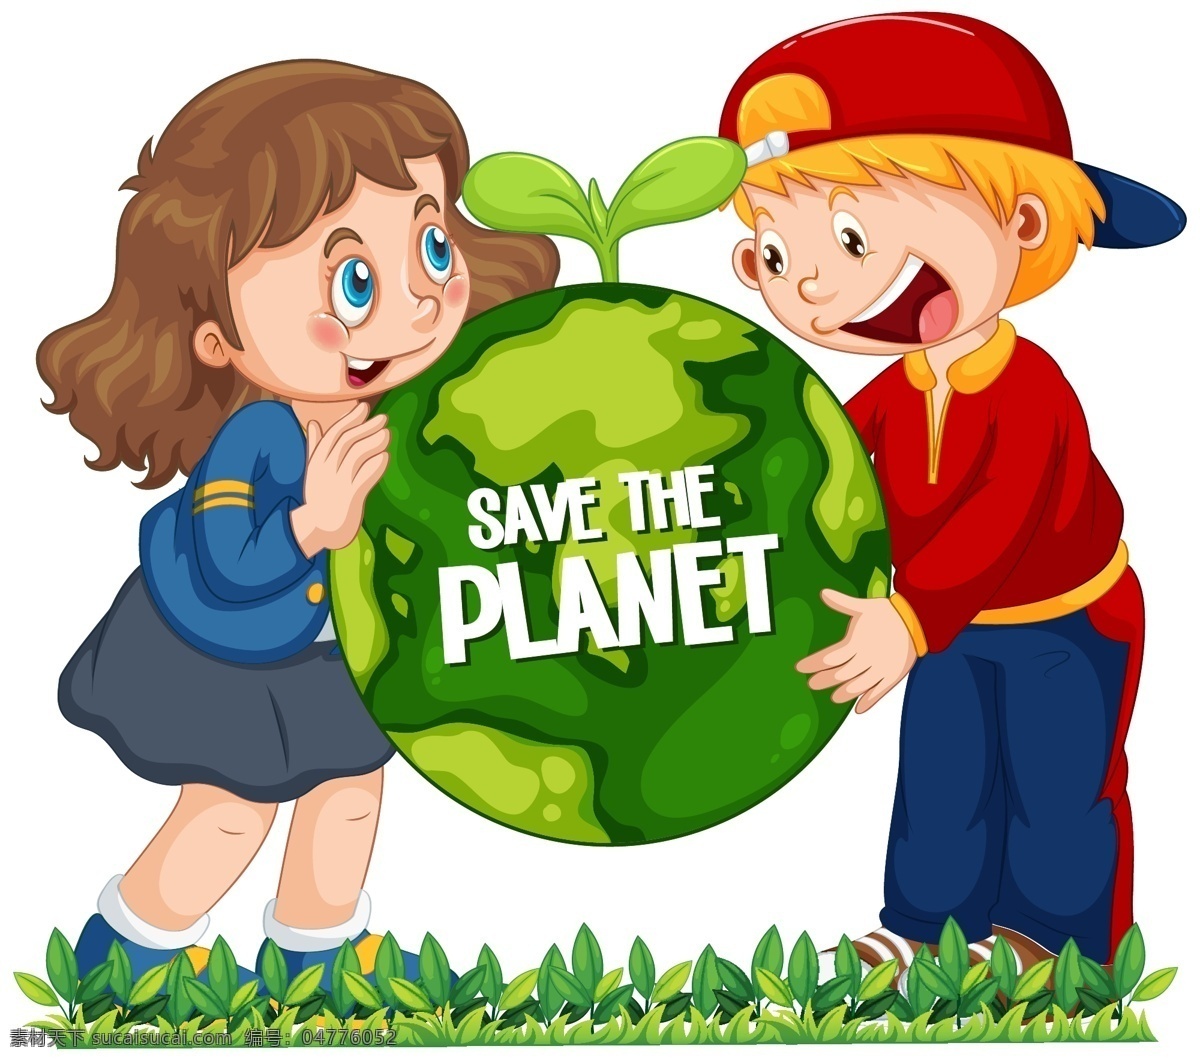 卡通儿童图片 卡通儿童 快乐儿童 插画 漫画 学生 儿童素材 幼儿园 人物 女孩 地球 地球日 环境保护 环保 绿化 卡通设计